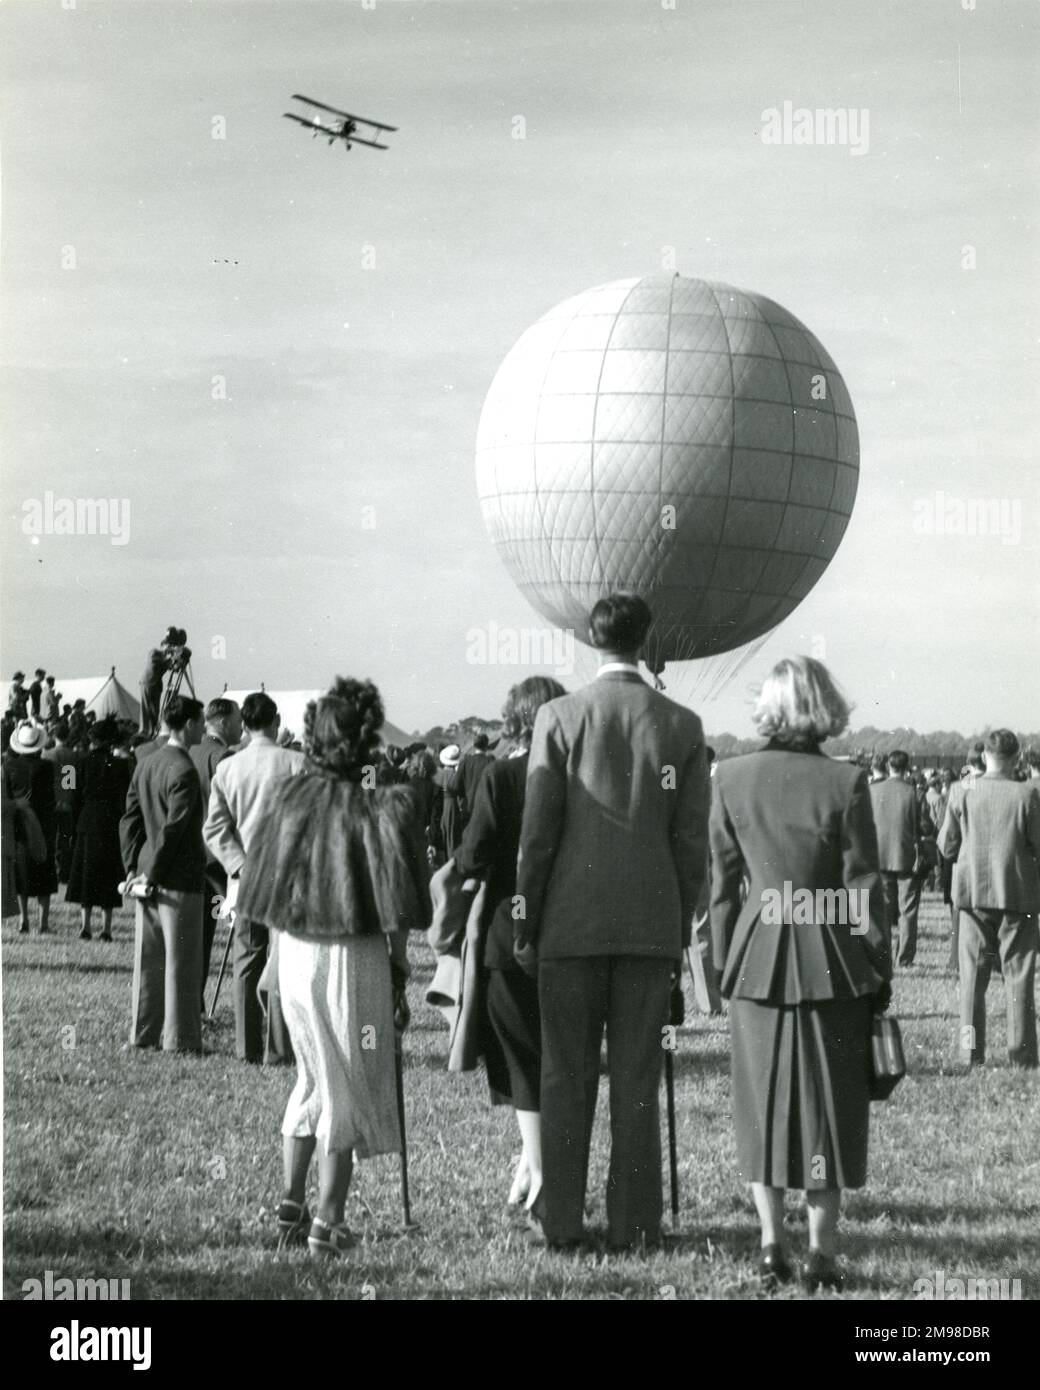 Dr. Harold Roxbee Cox, Präsident der Royal Aeronautical Society 1947-1949, verlässt die 1949. Gartenparty der Royal Aeronautical Society am White Waltham Aerodrome am 8. Mai in einem Wasserstoffballon, der von Charles Dollfus geflogen wird. Stockfoto